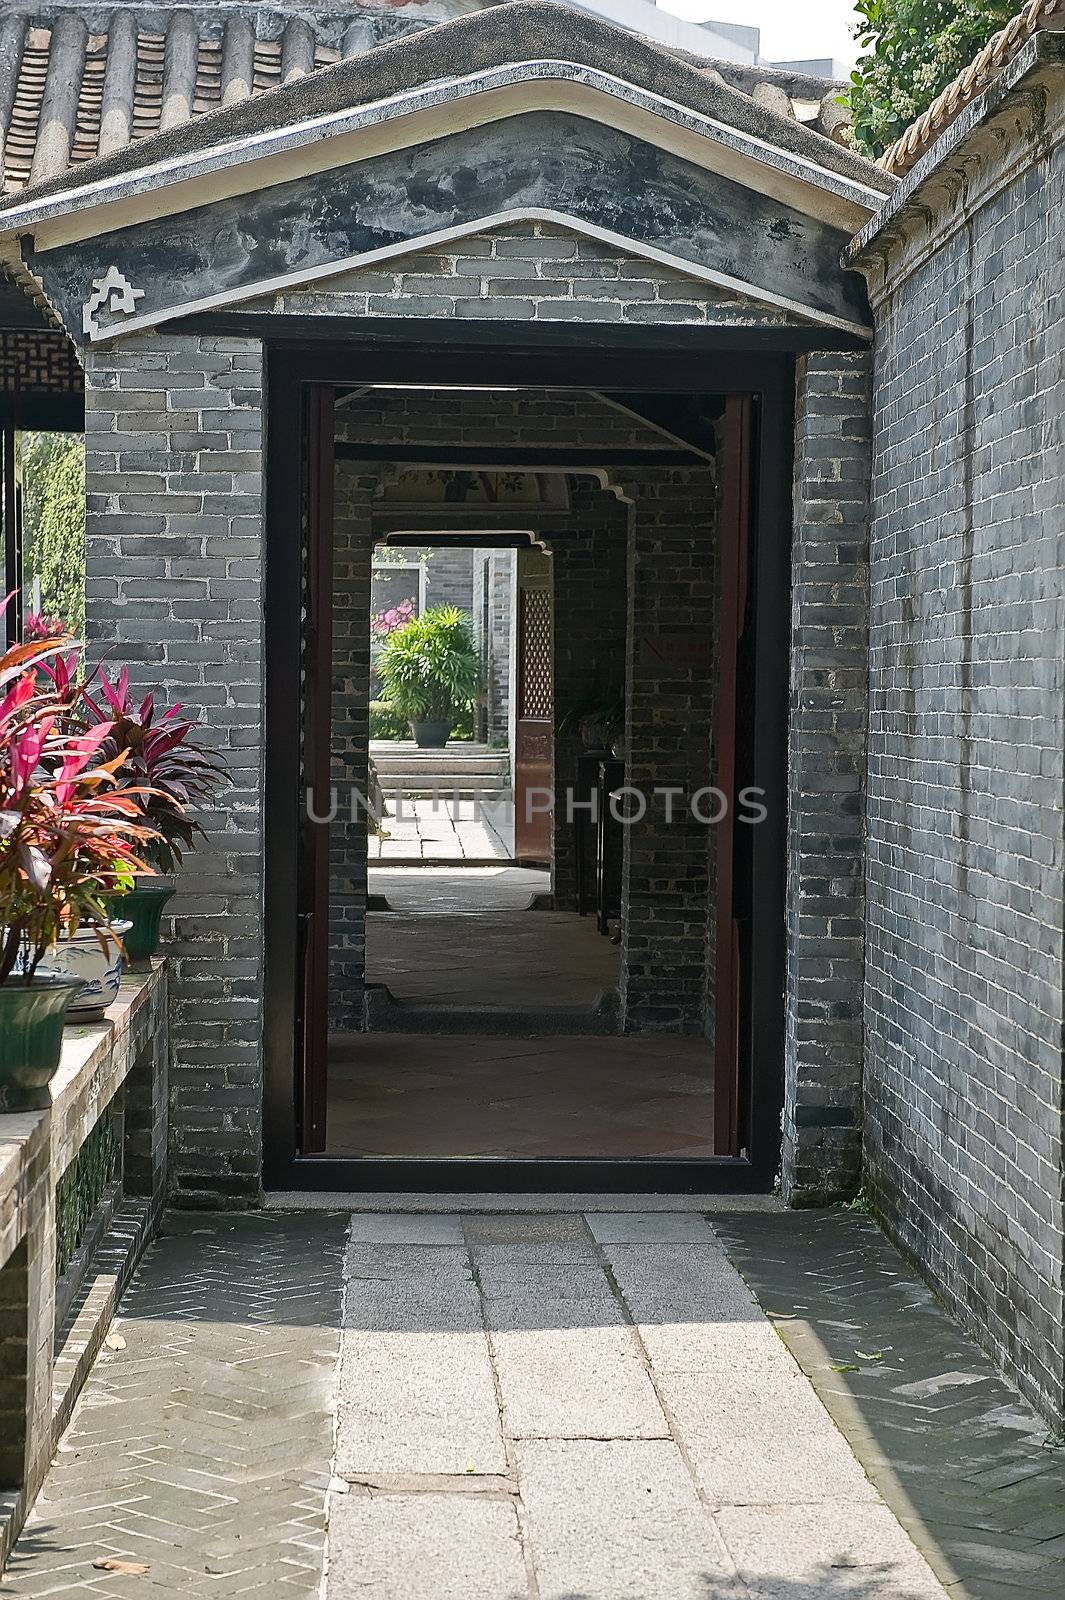 Pathway through Qinghui garden in Shunde, Foshan, Guangdong China